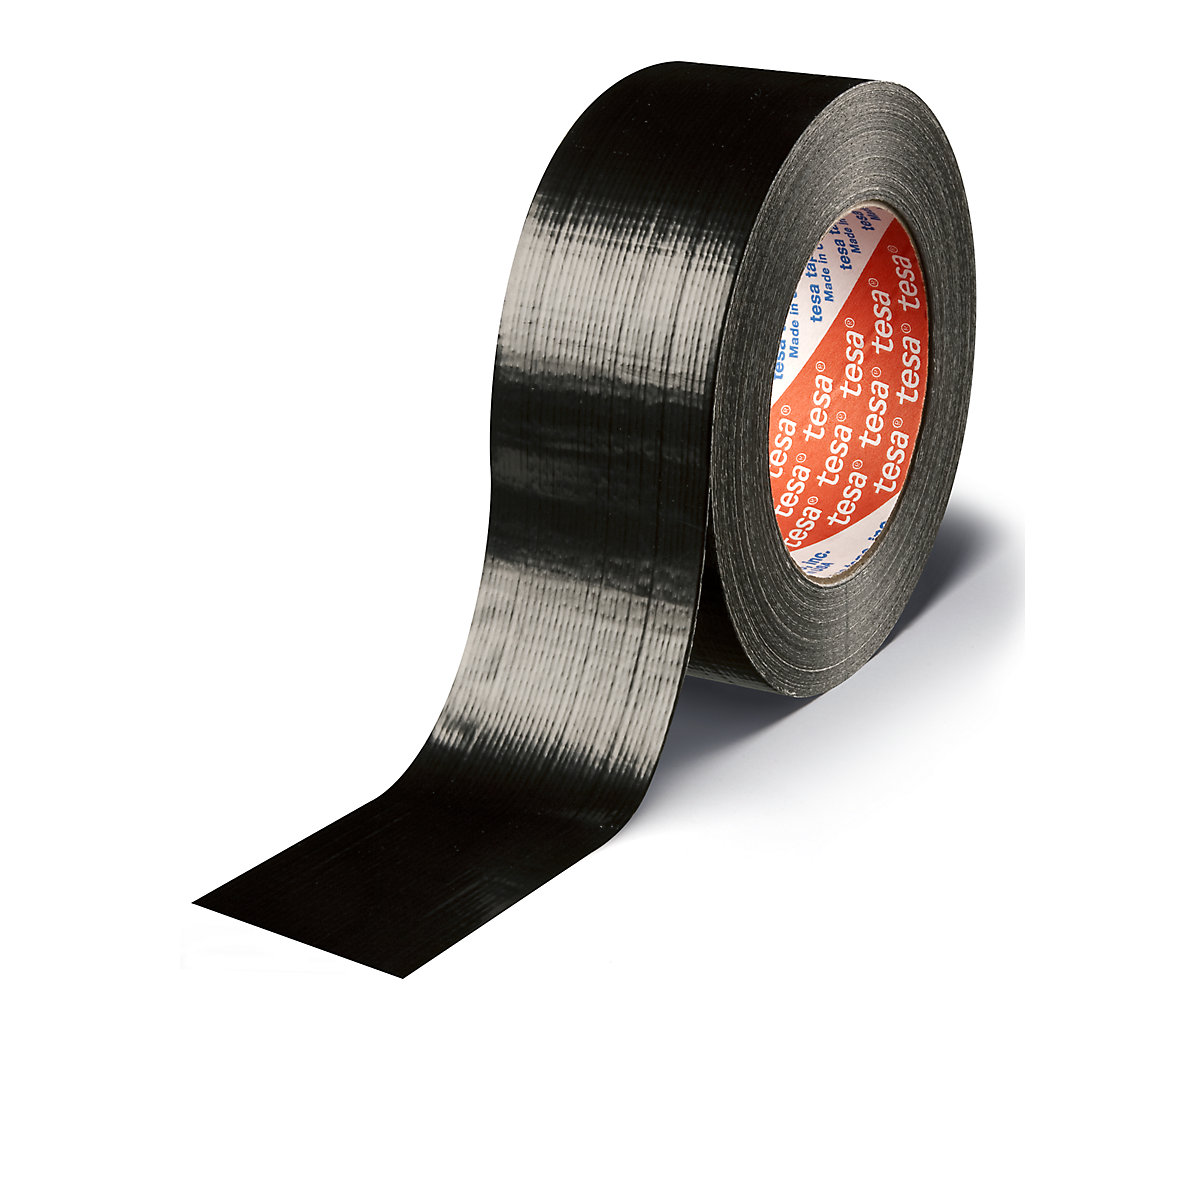 Fabric tape – tesa, tesa® 4613 standard stone tape, pack of 24 rolls, black, tape width 48 mm-2